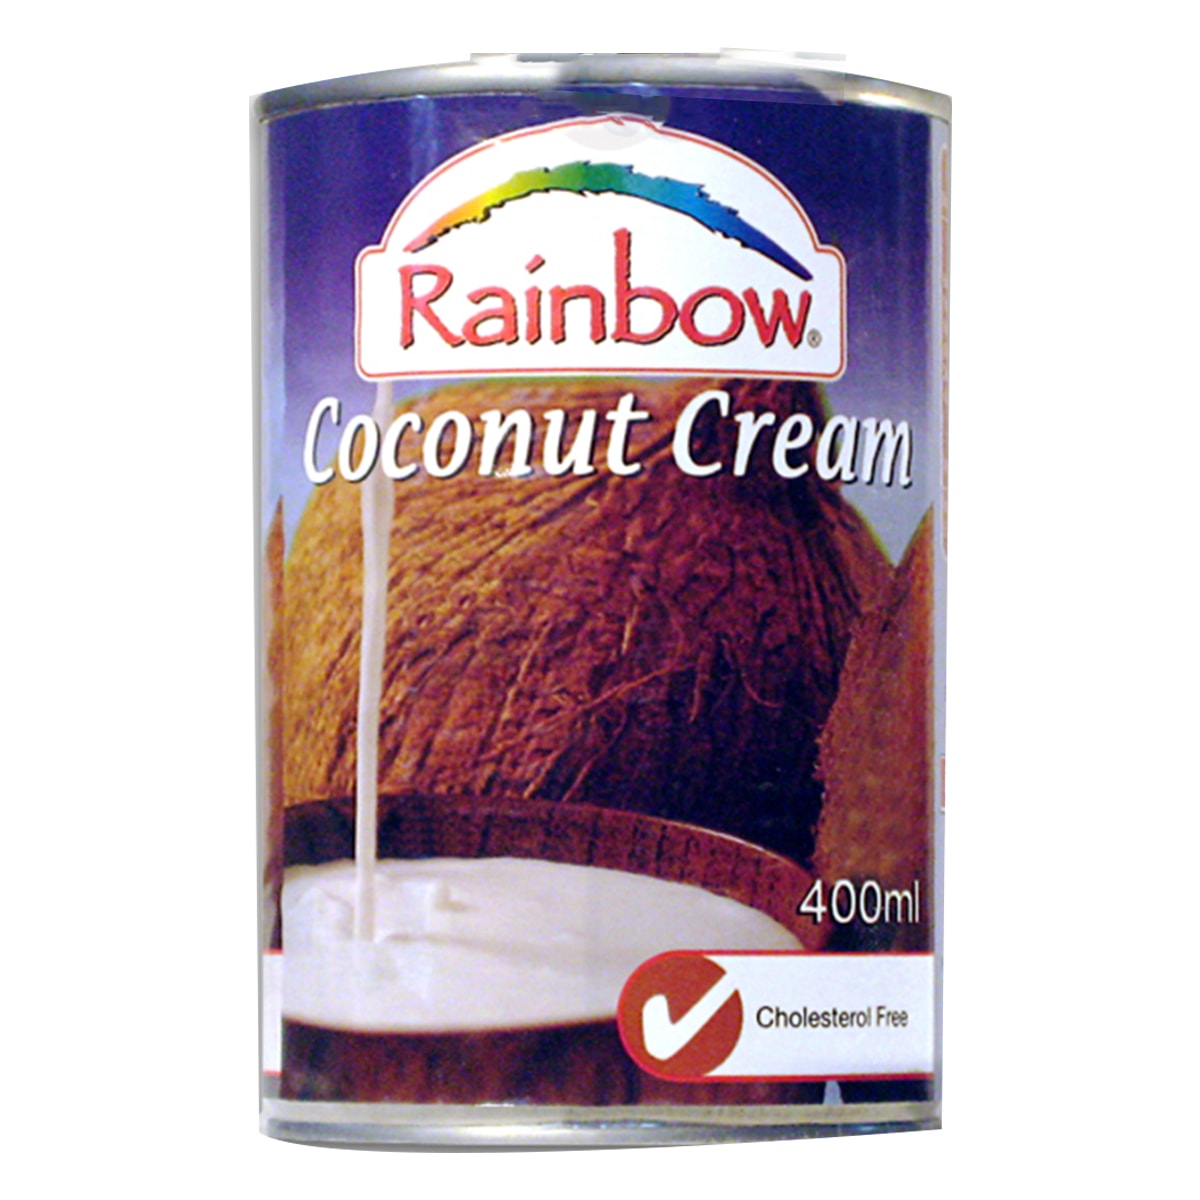 Buy Rainbow Coconut Cream - 400 ml